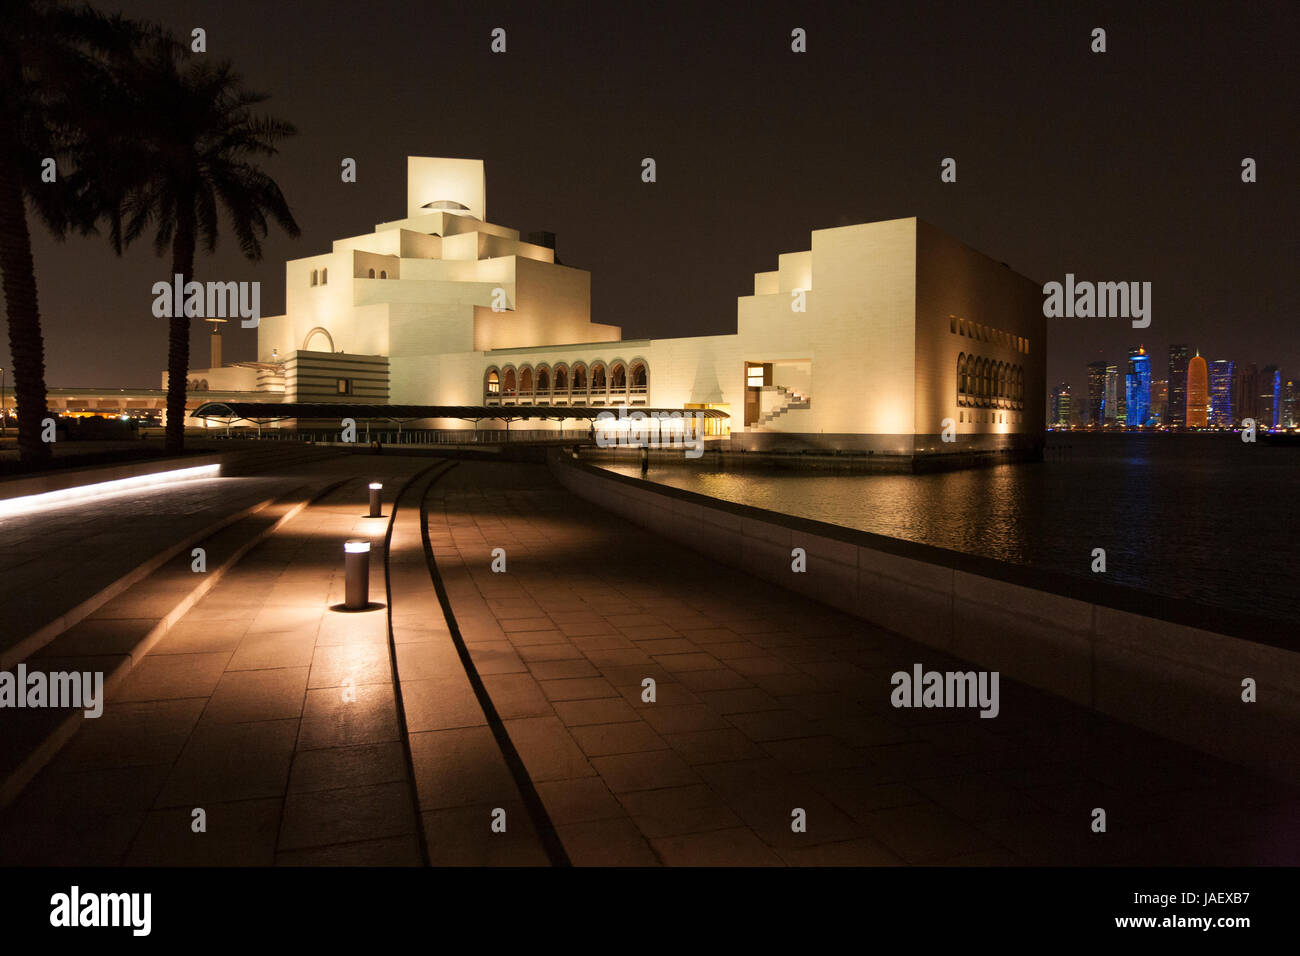 Le Musée d'Art islamique de Doha au Qatar, avec une vue sur la baie au-delà de la forte hausse des skyscrappers West Bay. Banque D'Images